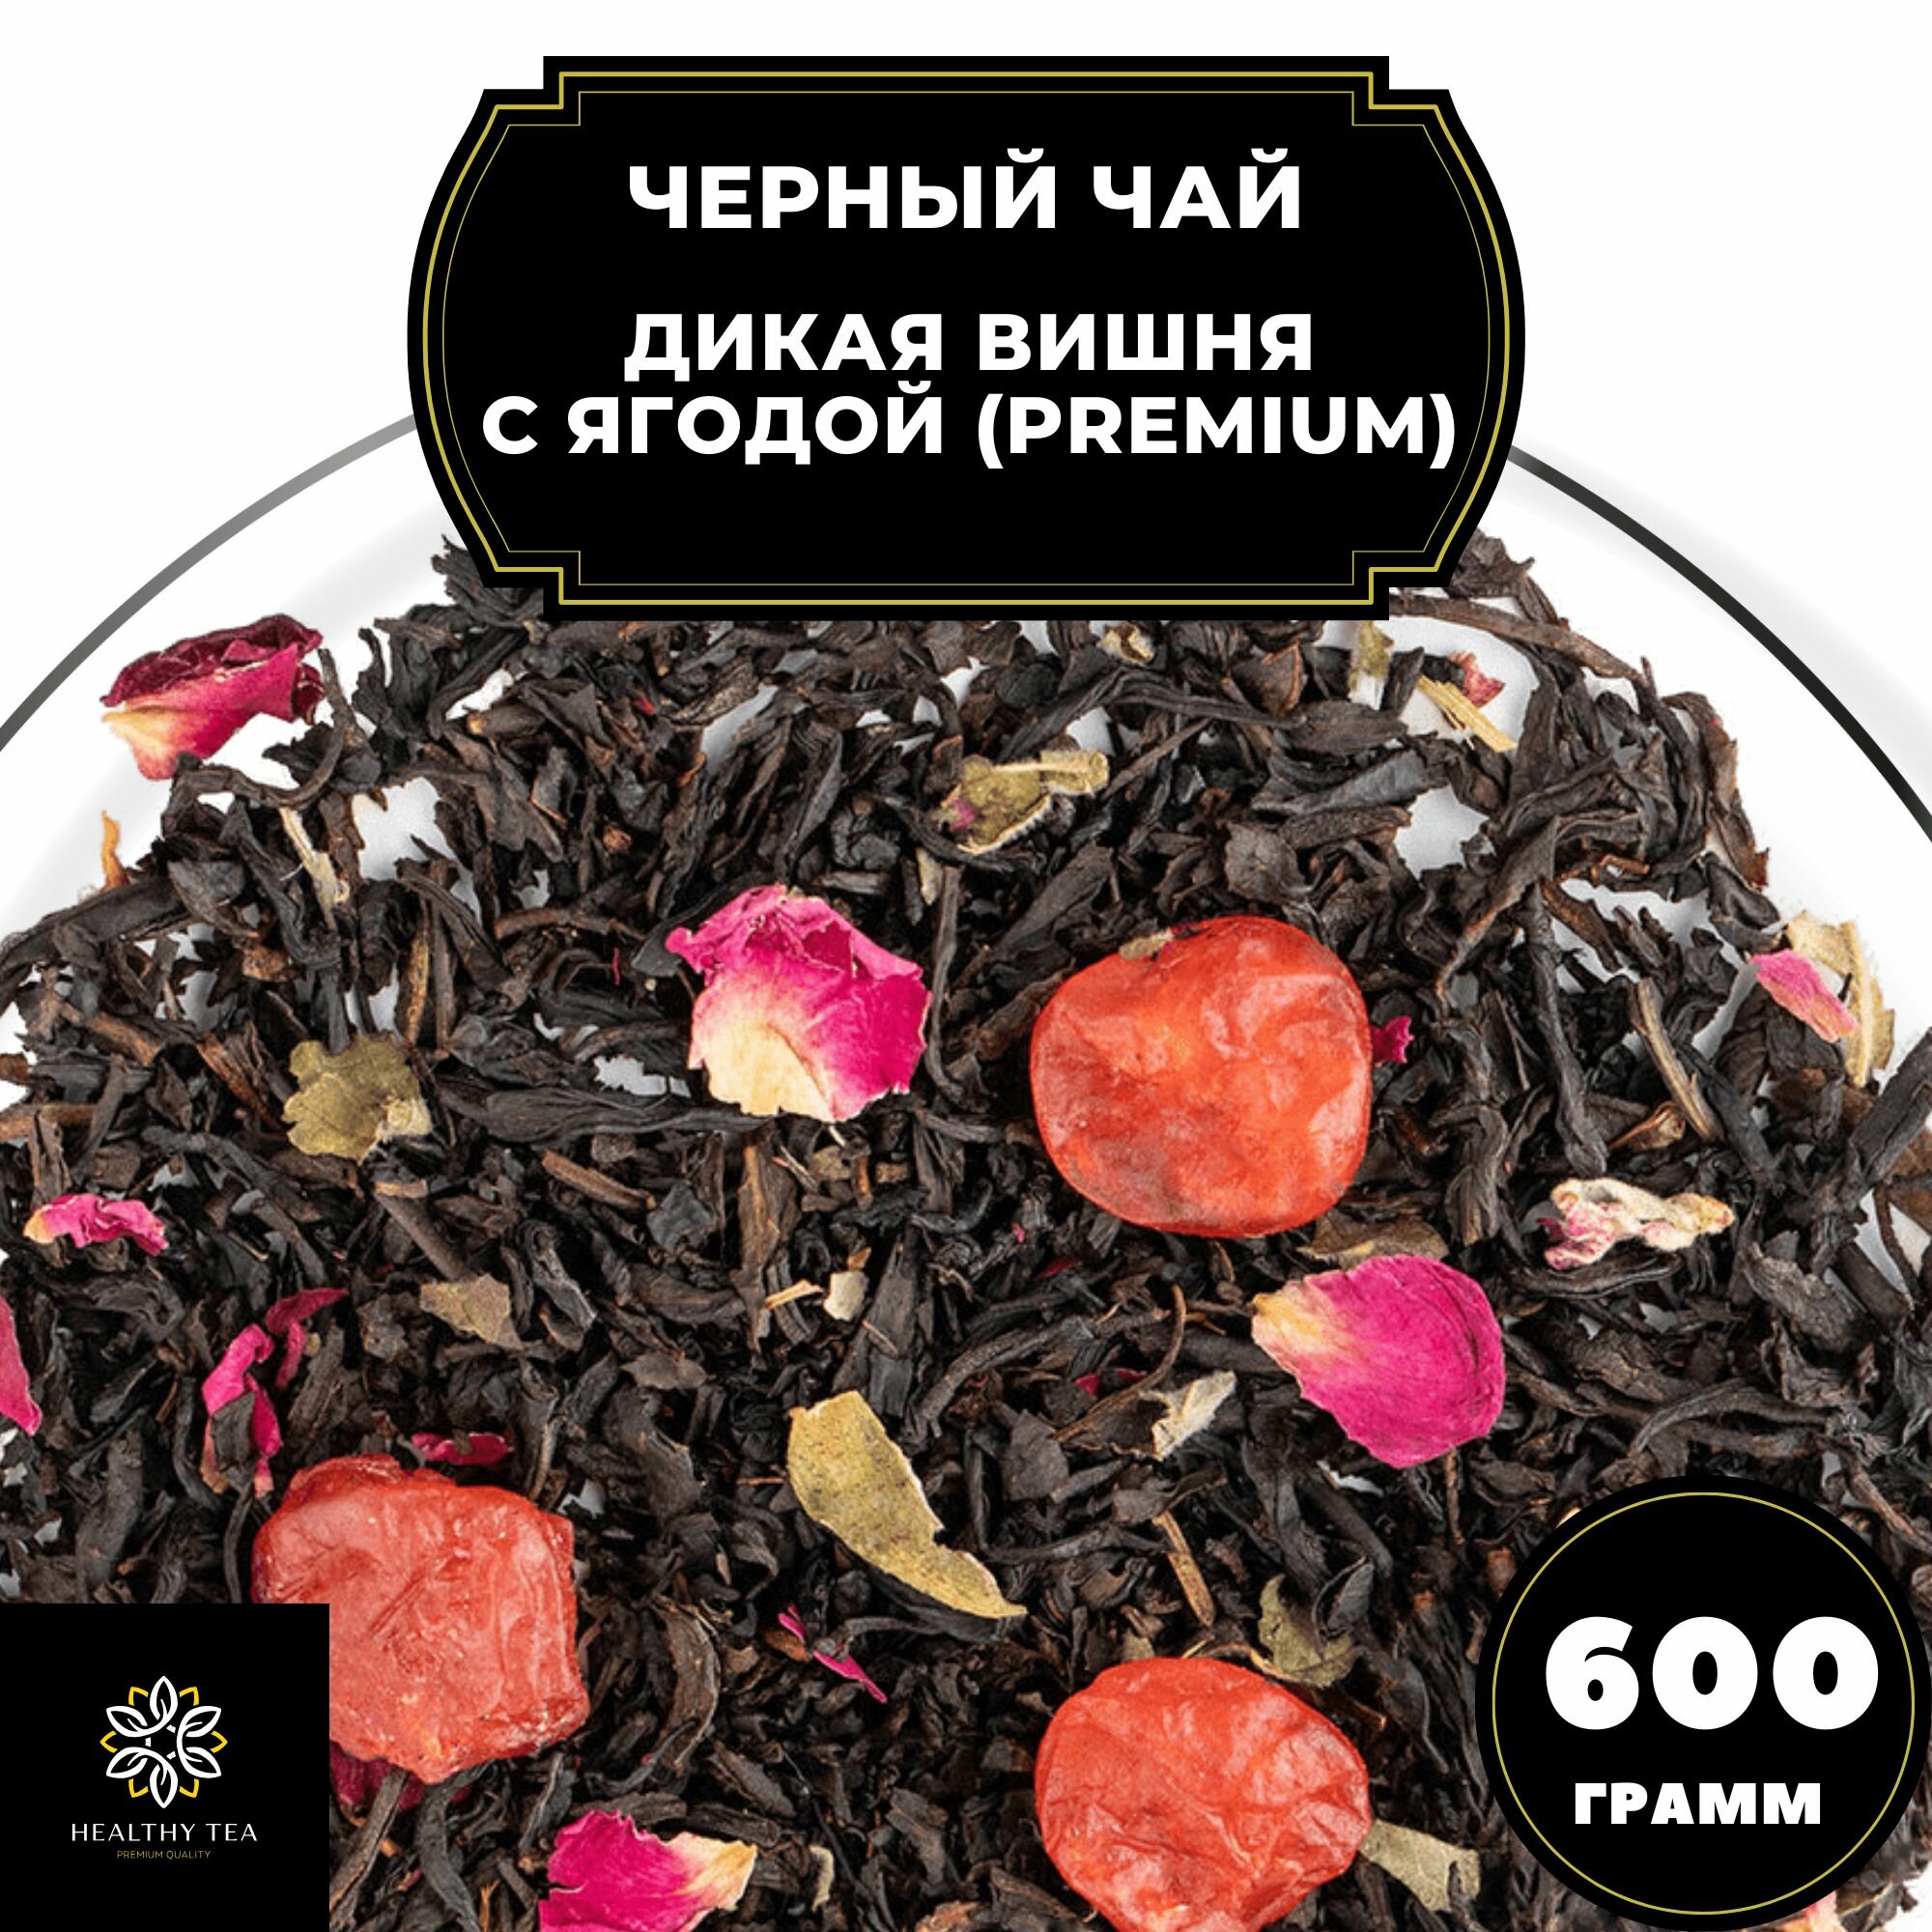 Китайский Черный чай с вишней и розой "Дикая вишня с ягодой" (Premium) Полезный чай / HEALTHY TEA, 600 гр